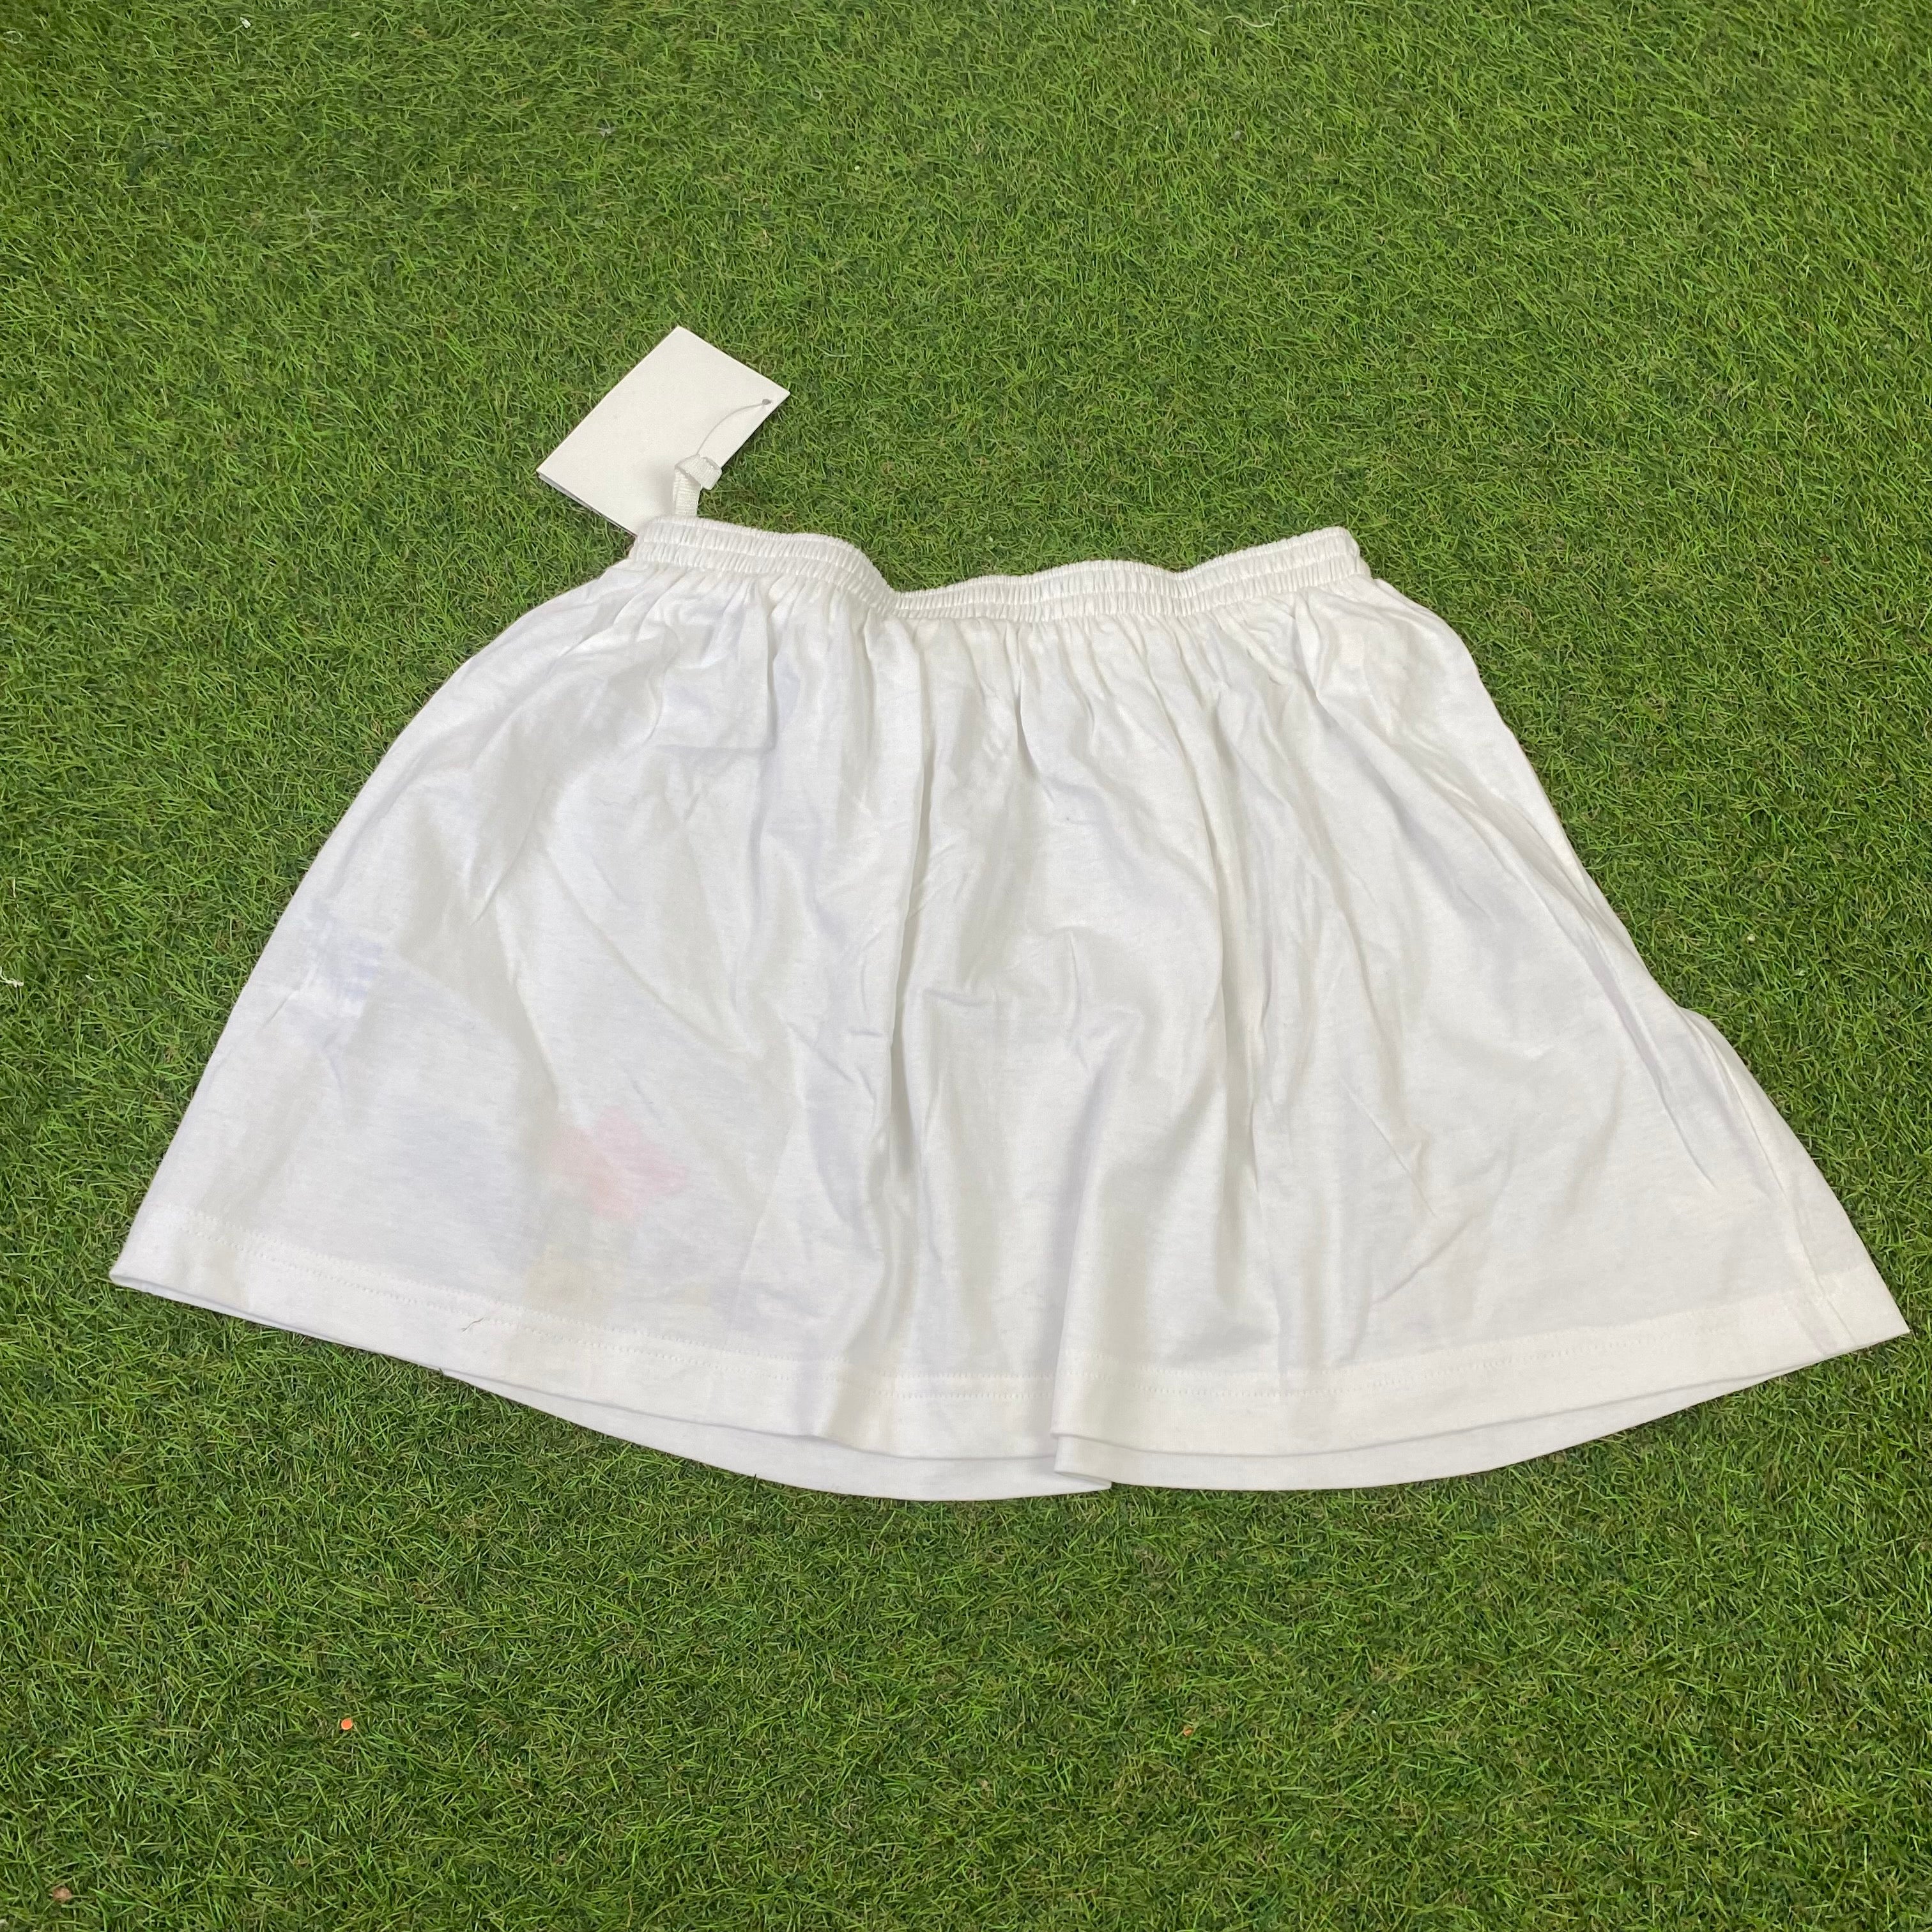 Vintage Adidas Steffi Graf Skirt White Large